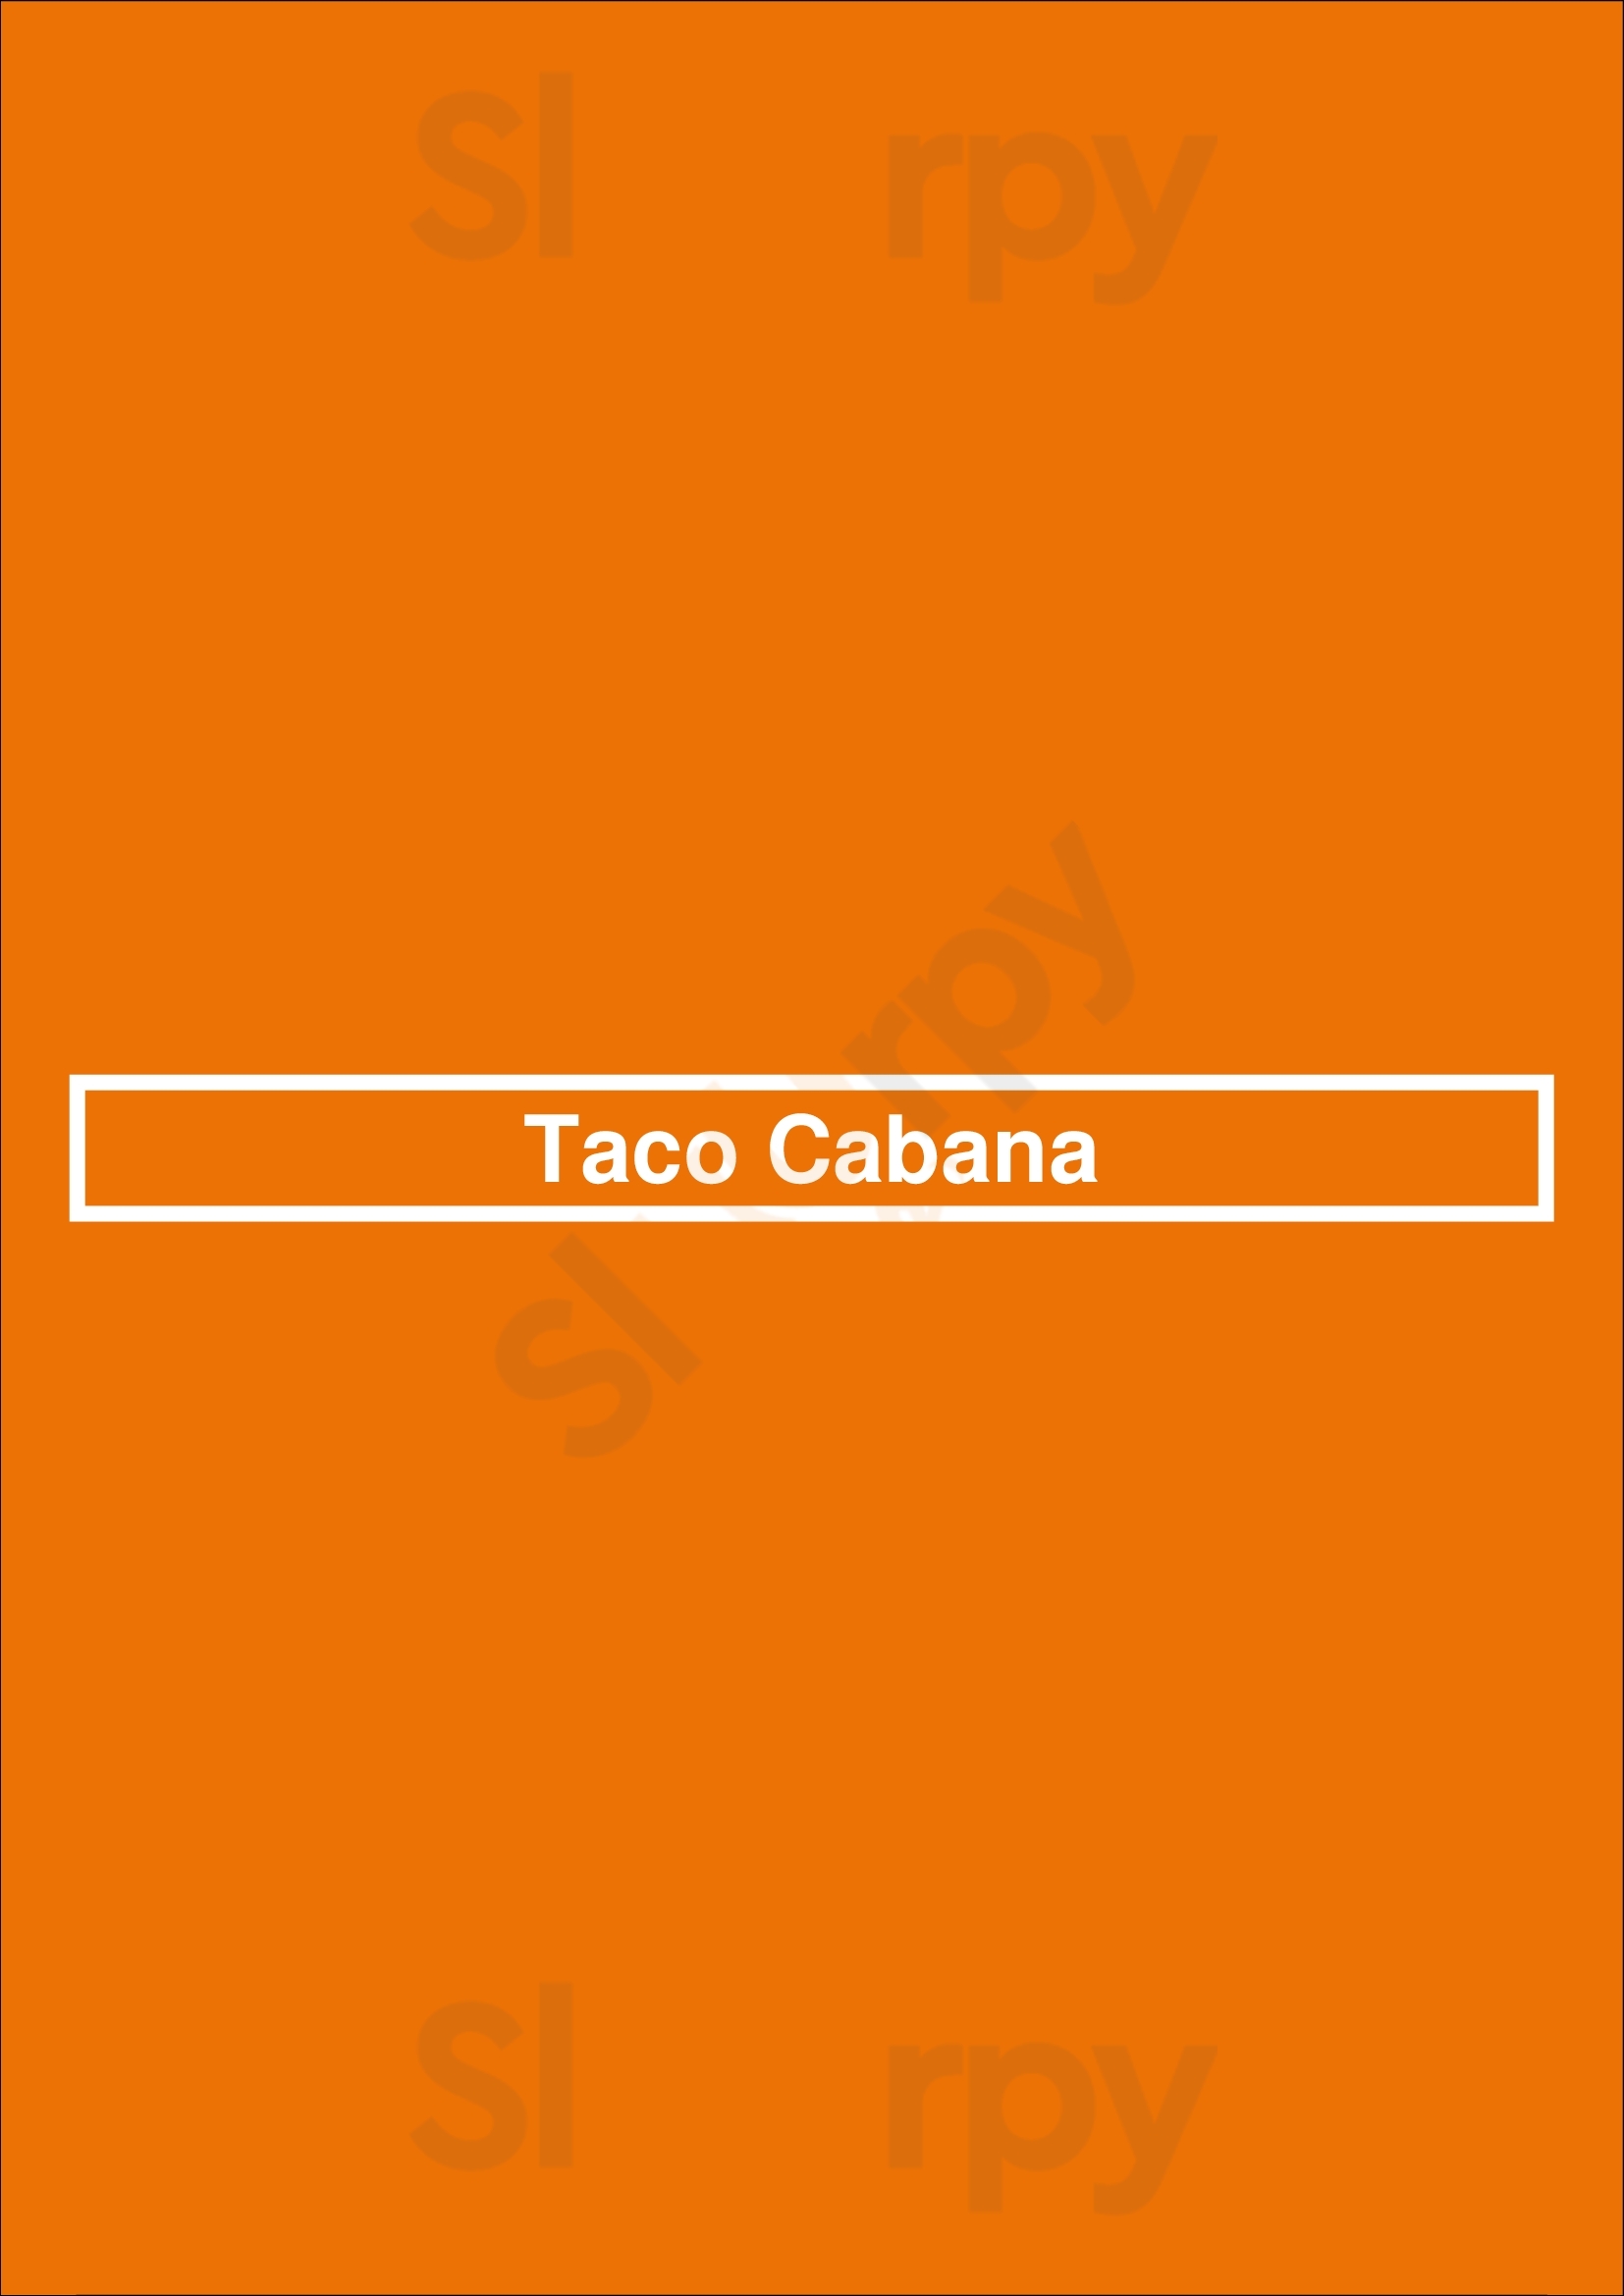 Taco Cabana San Antonio Menu - 1